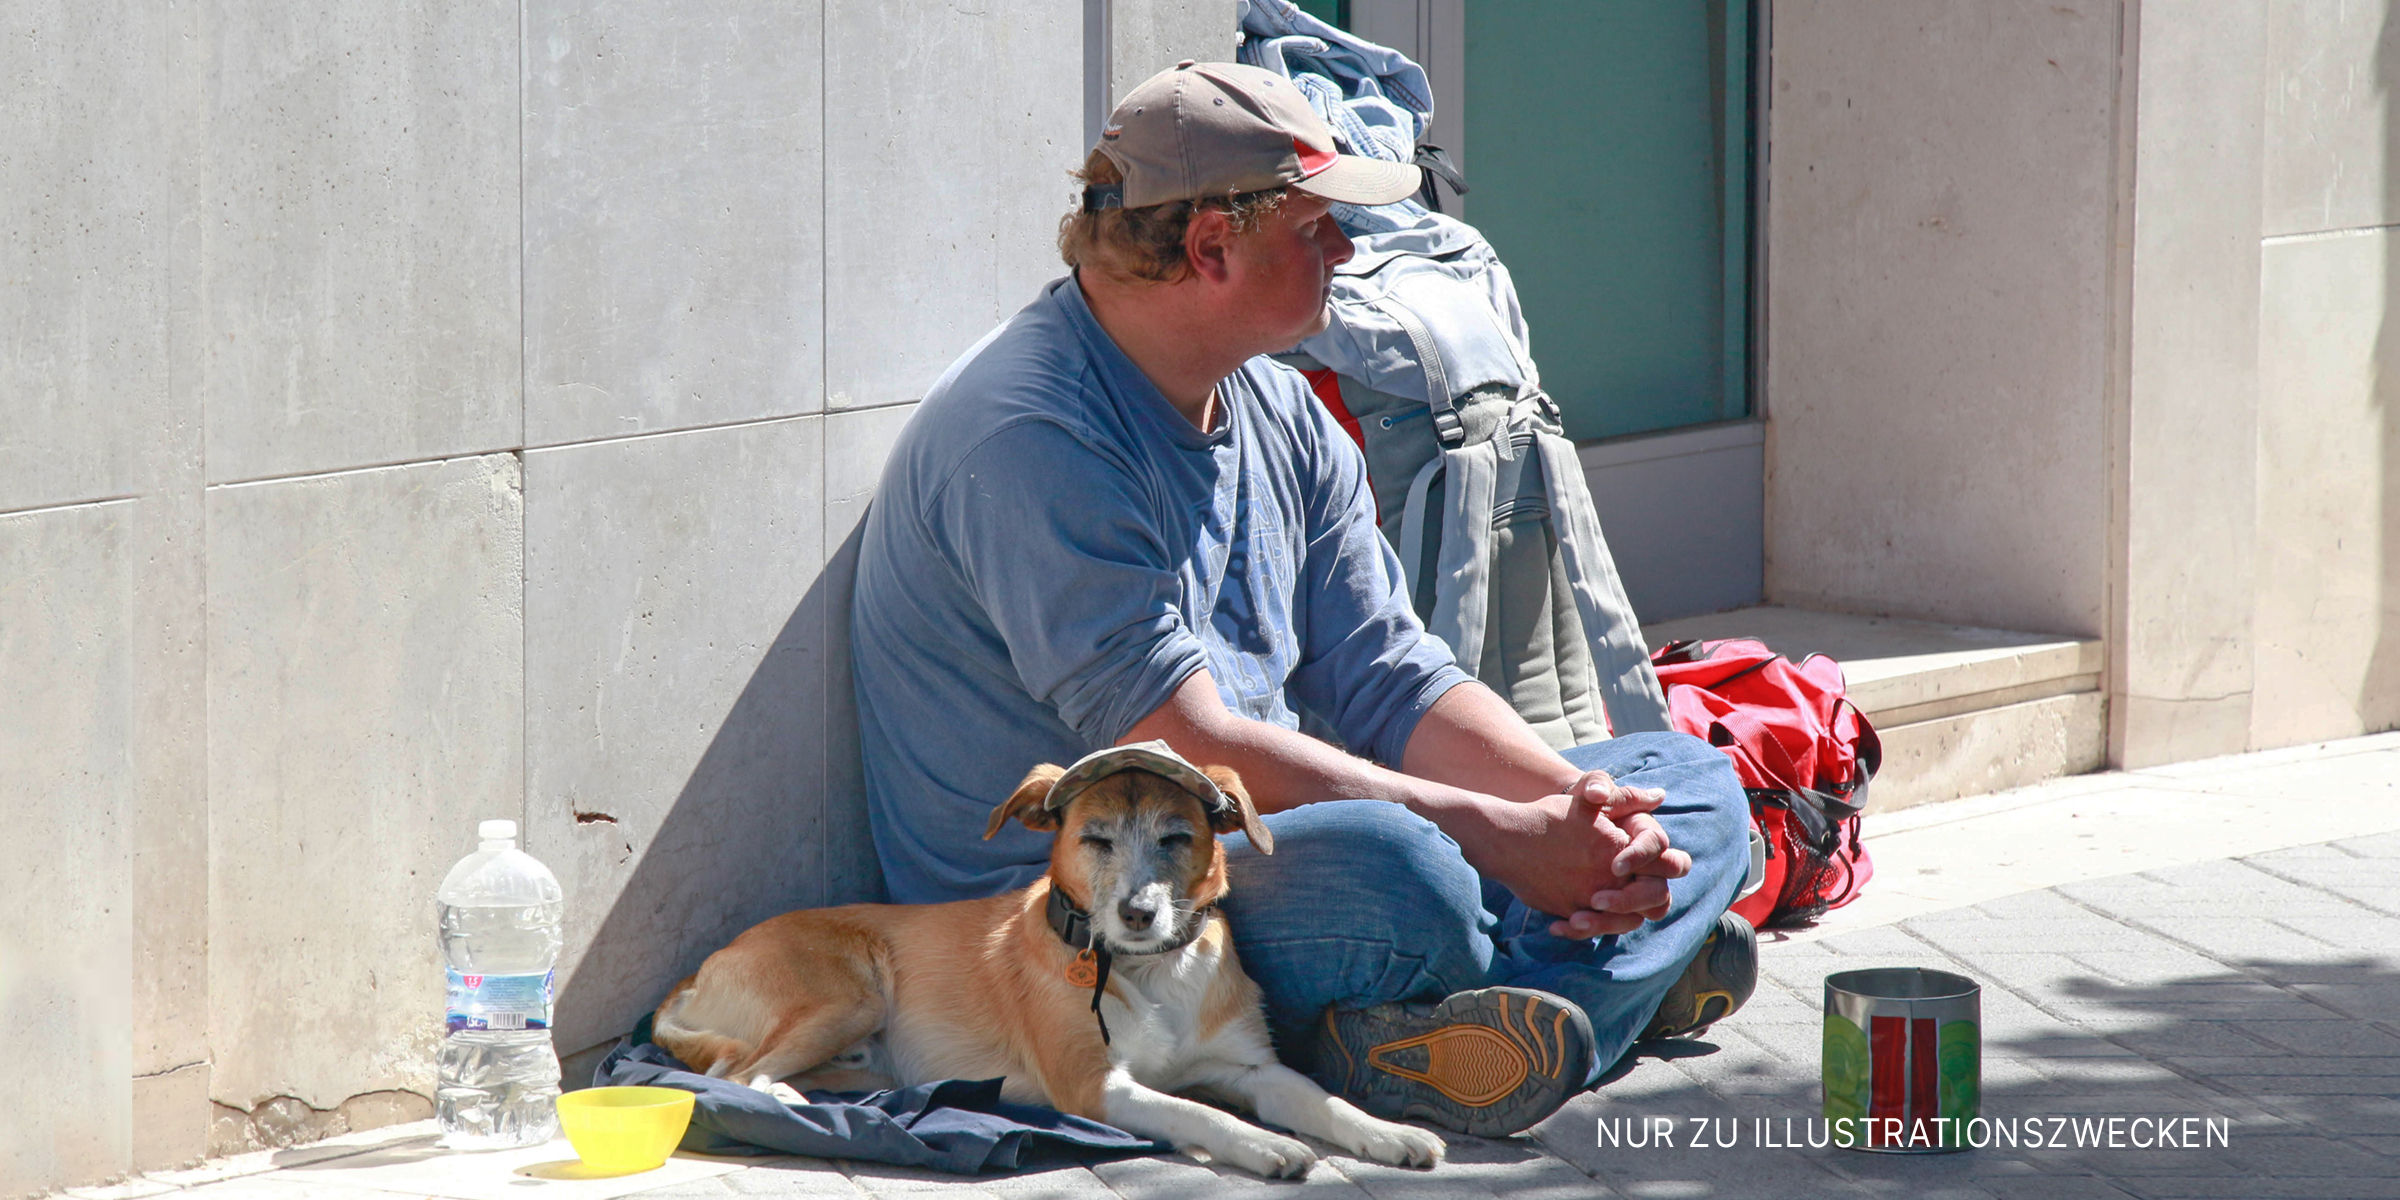 Bettler und Hund sitzen auf einem Bürgersteig. | Quelle: Flickr / Mussi Katz (Public Domain)